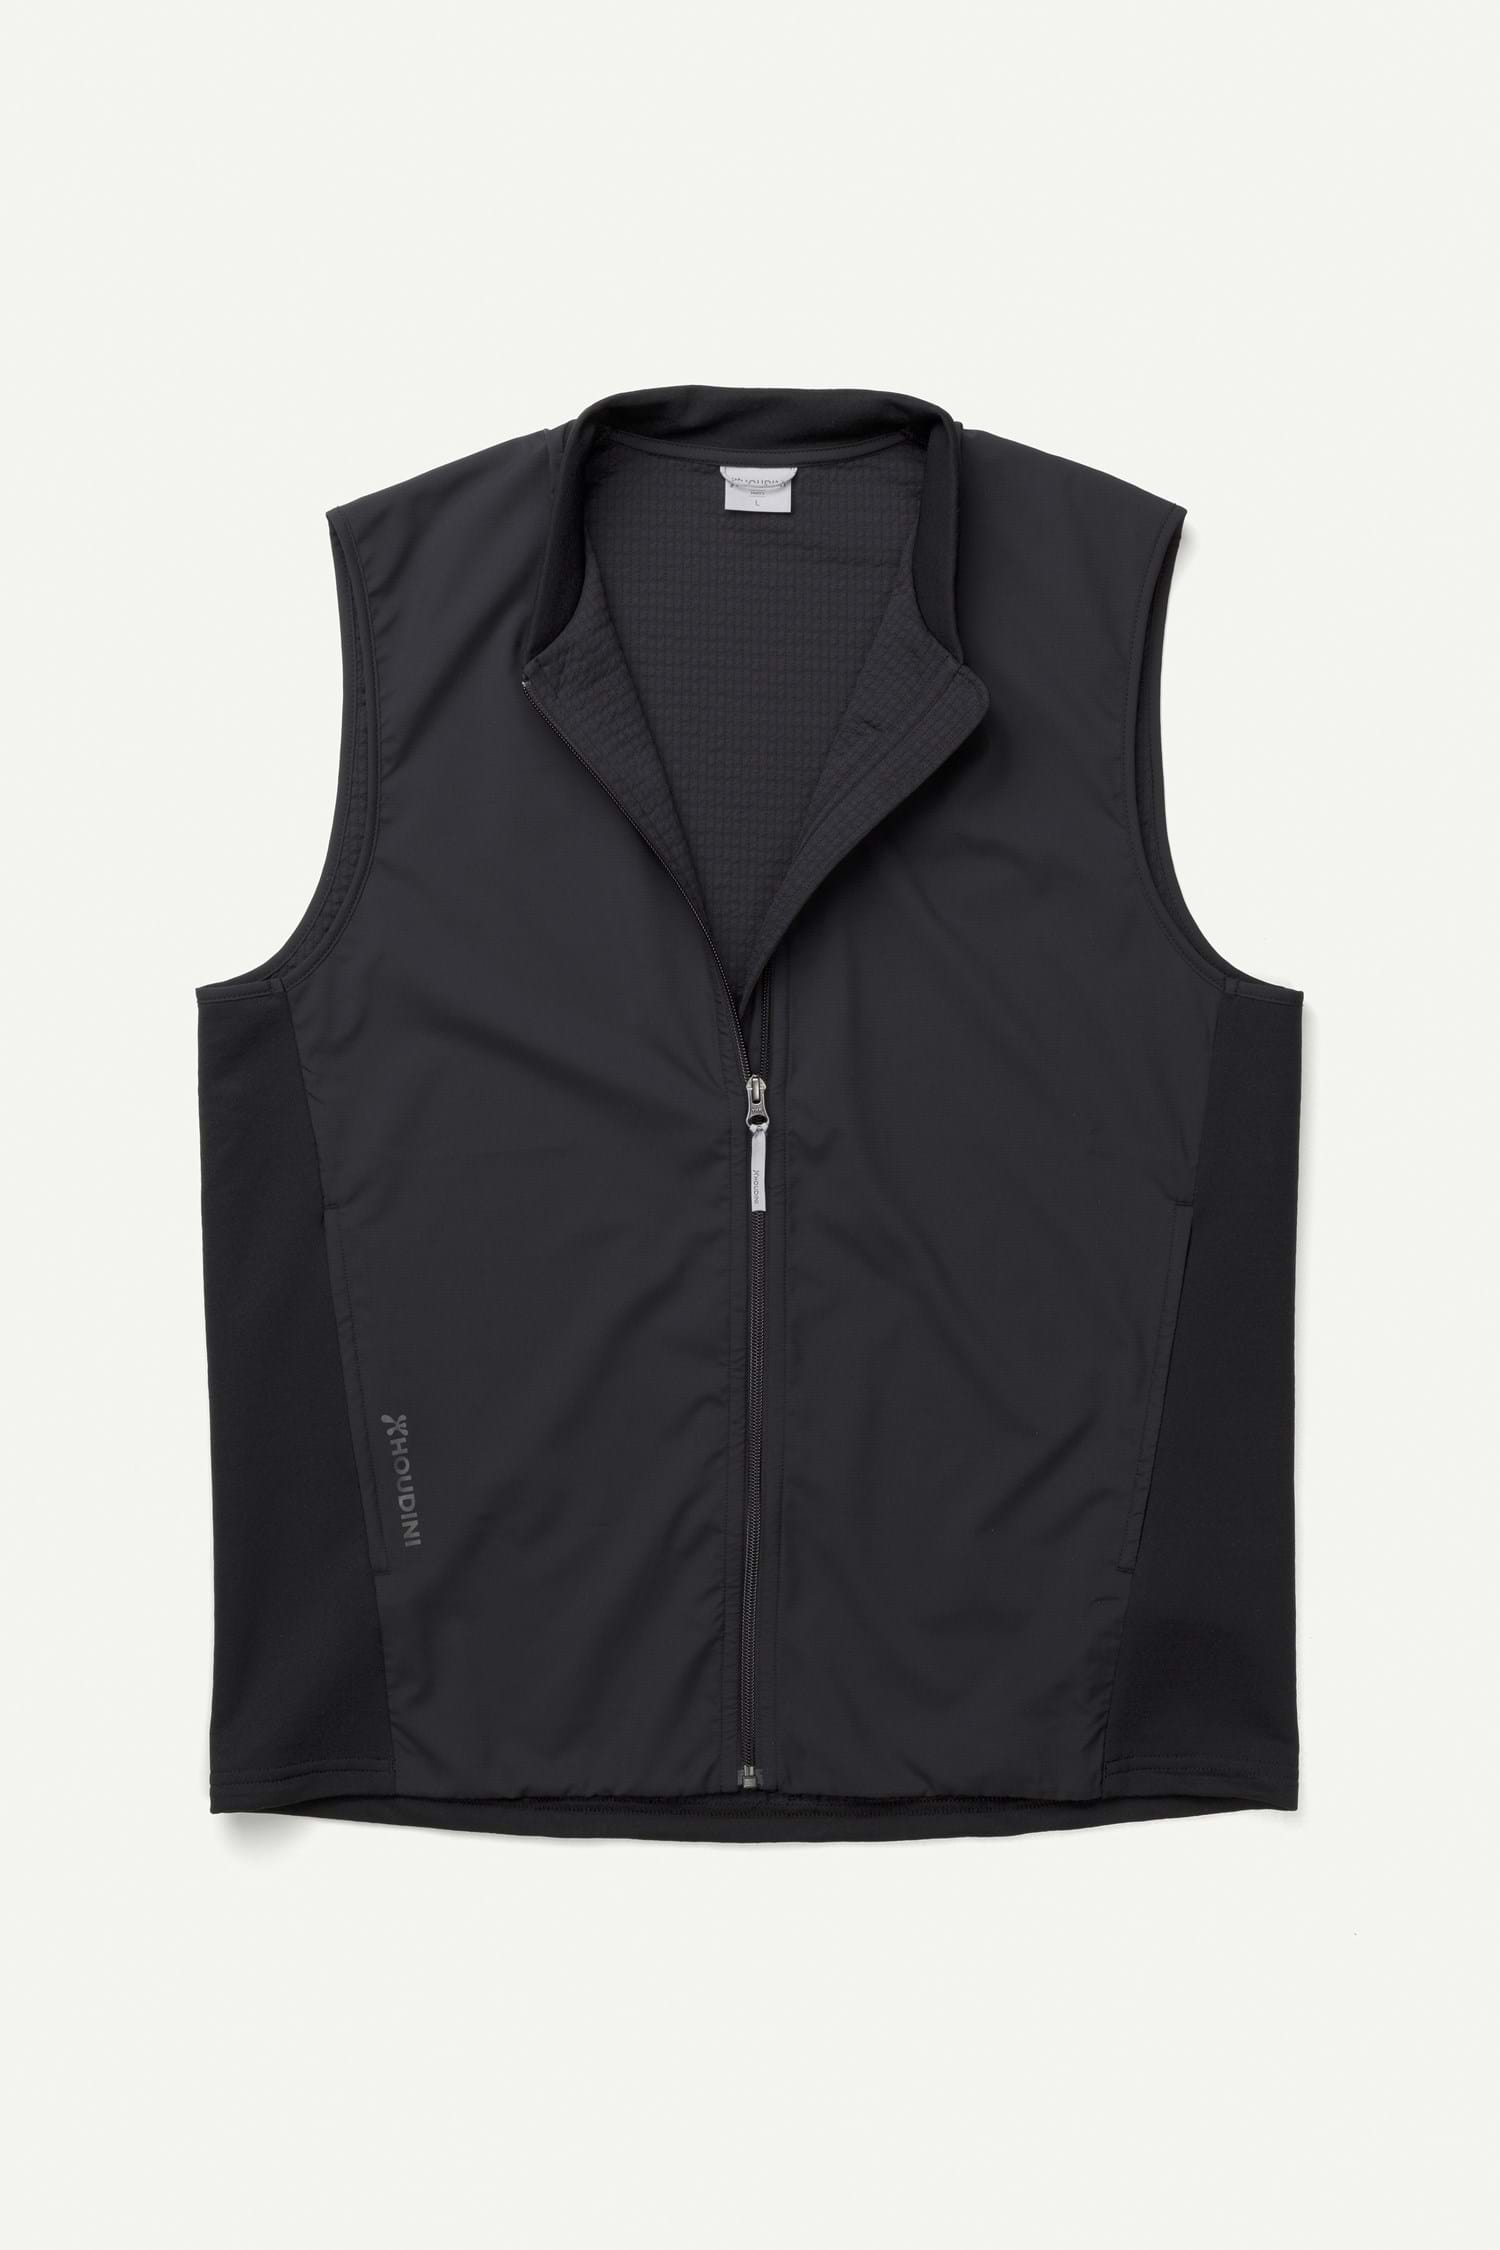 M's Mono Air Vest | Houdini Sportswear